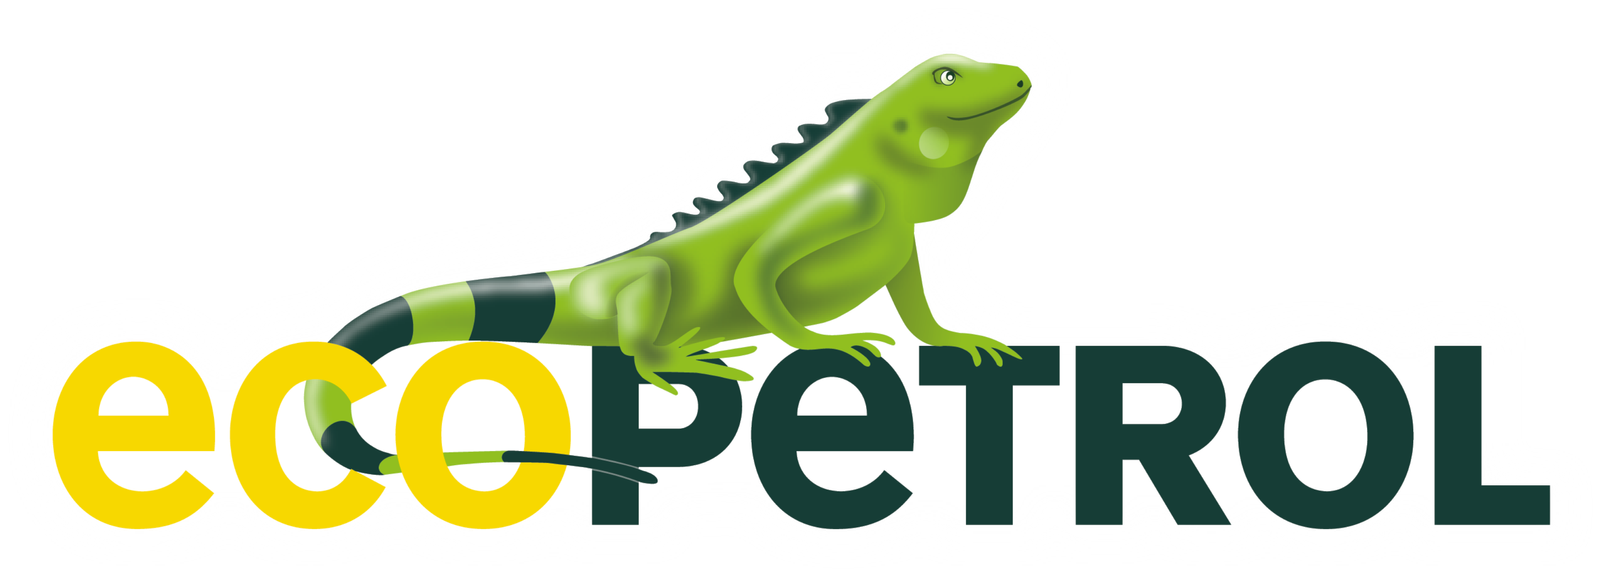 Ecopetrol-logo